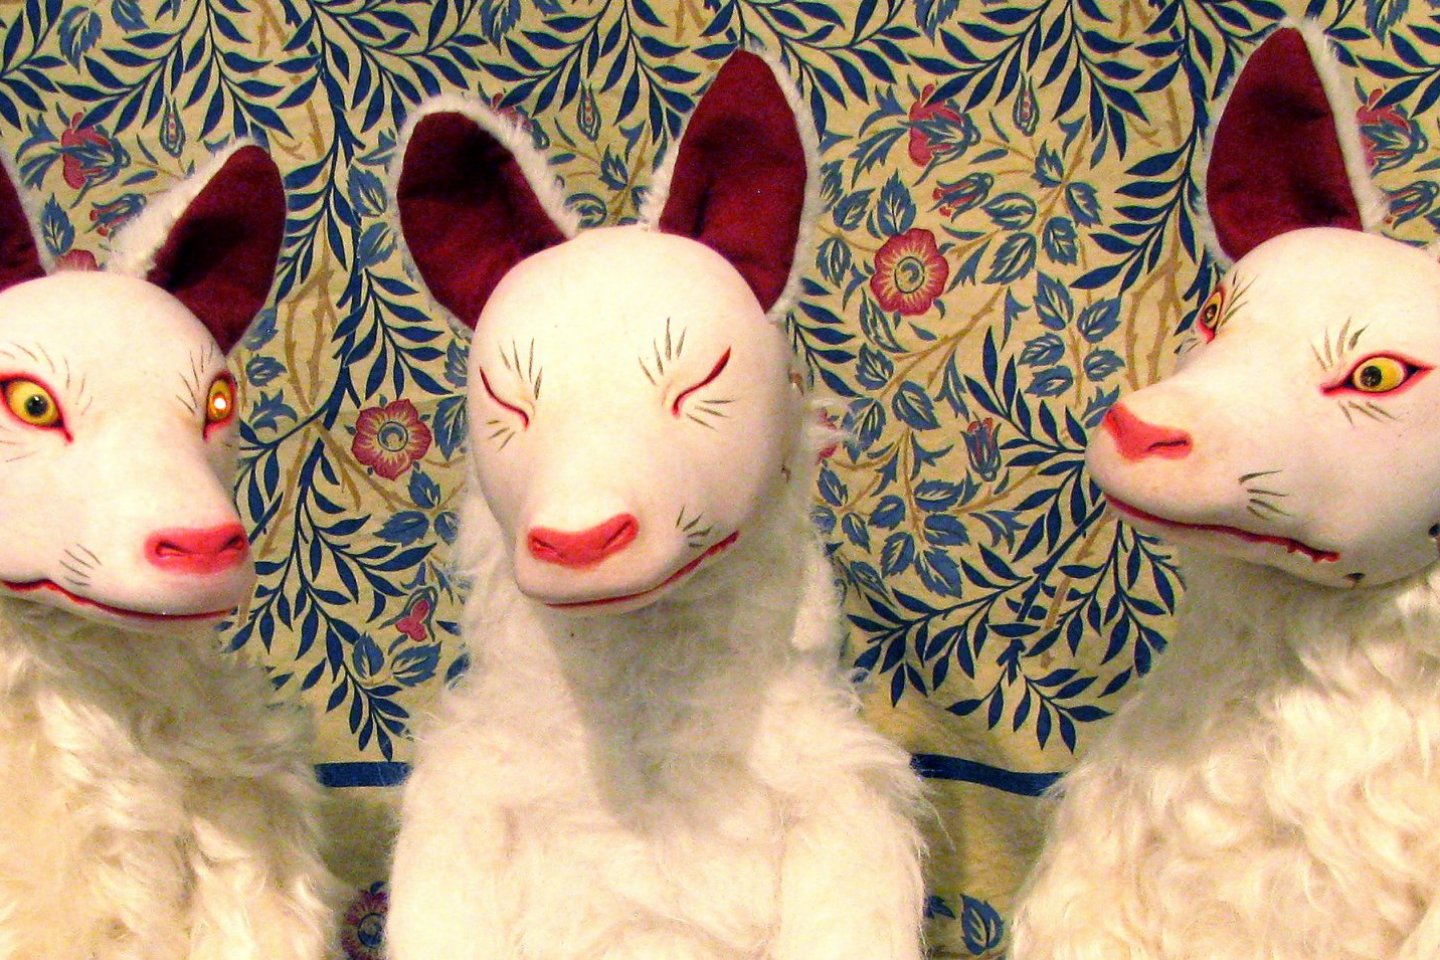 Kitsune dolls by Japanese artist, Noe